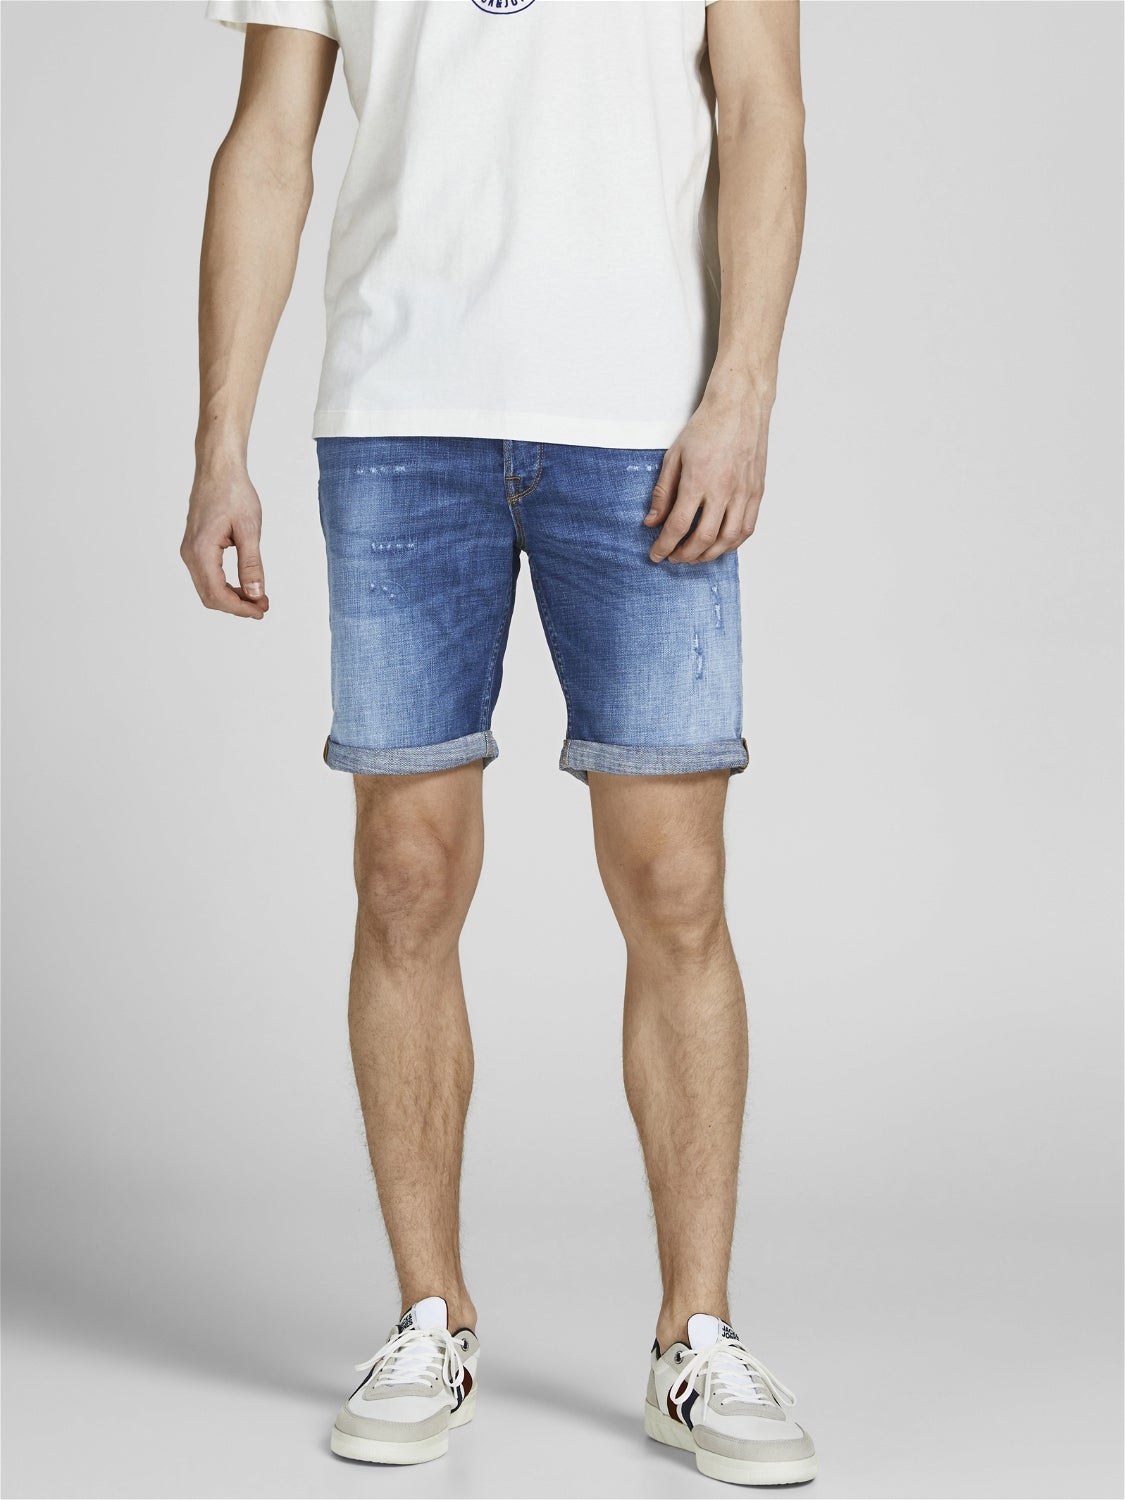 Schwarz S Jack & Jones Shorts jeans Rabatt 57 % HERREN Jeans Elastisch 